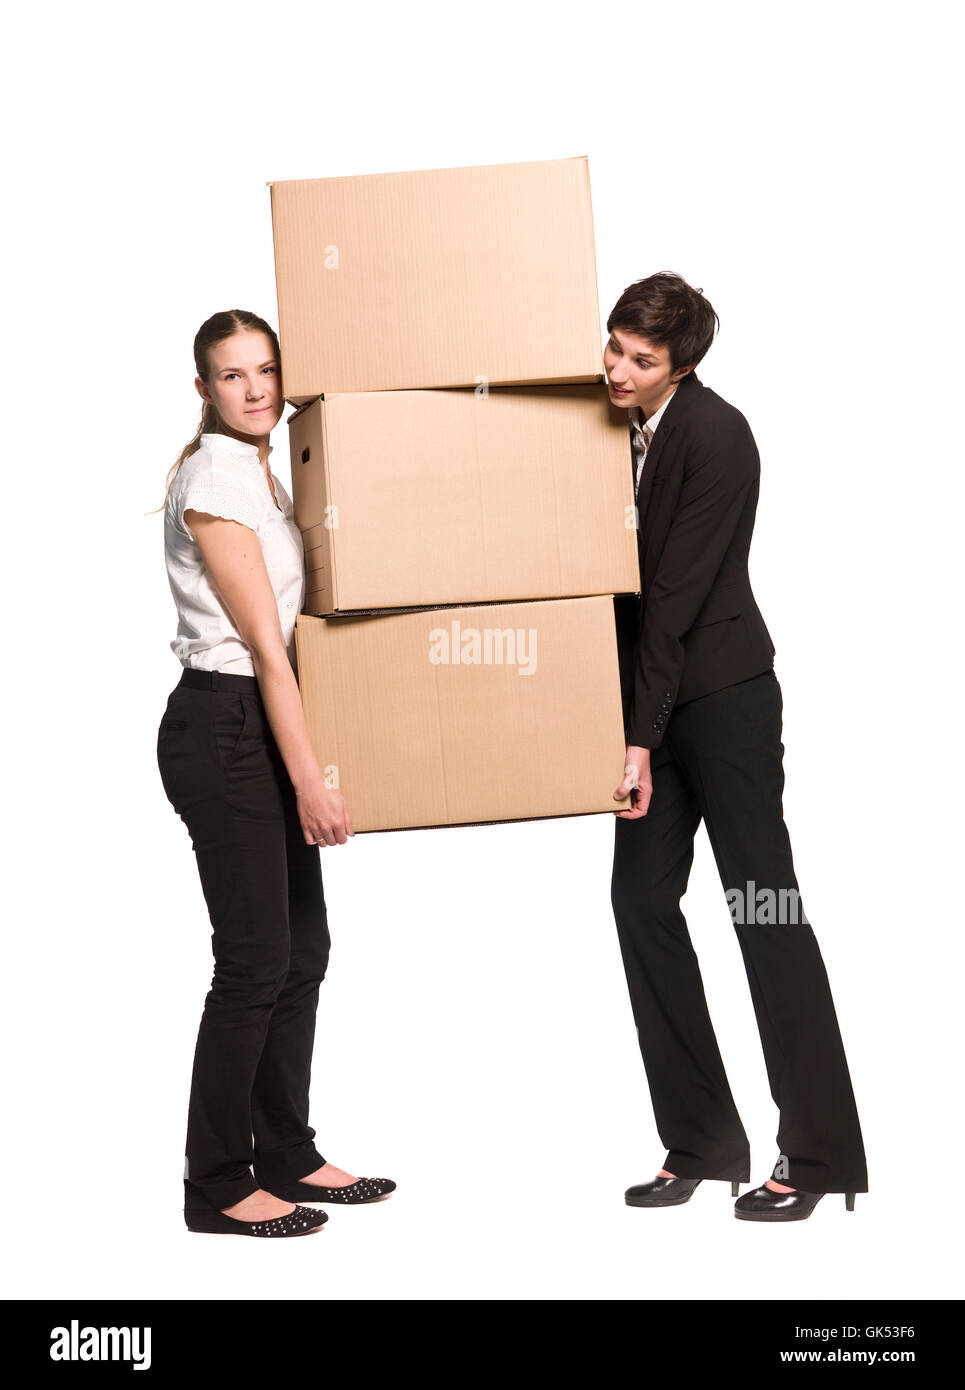 Personas cargando cajas Imágenes recortadas de stock - Página 2 - Alamy